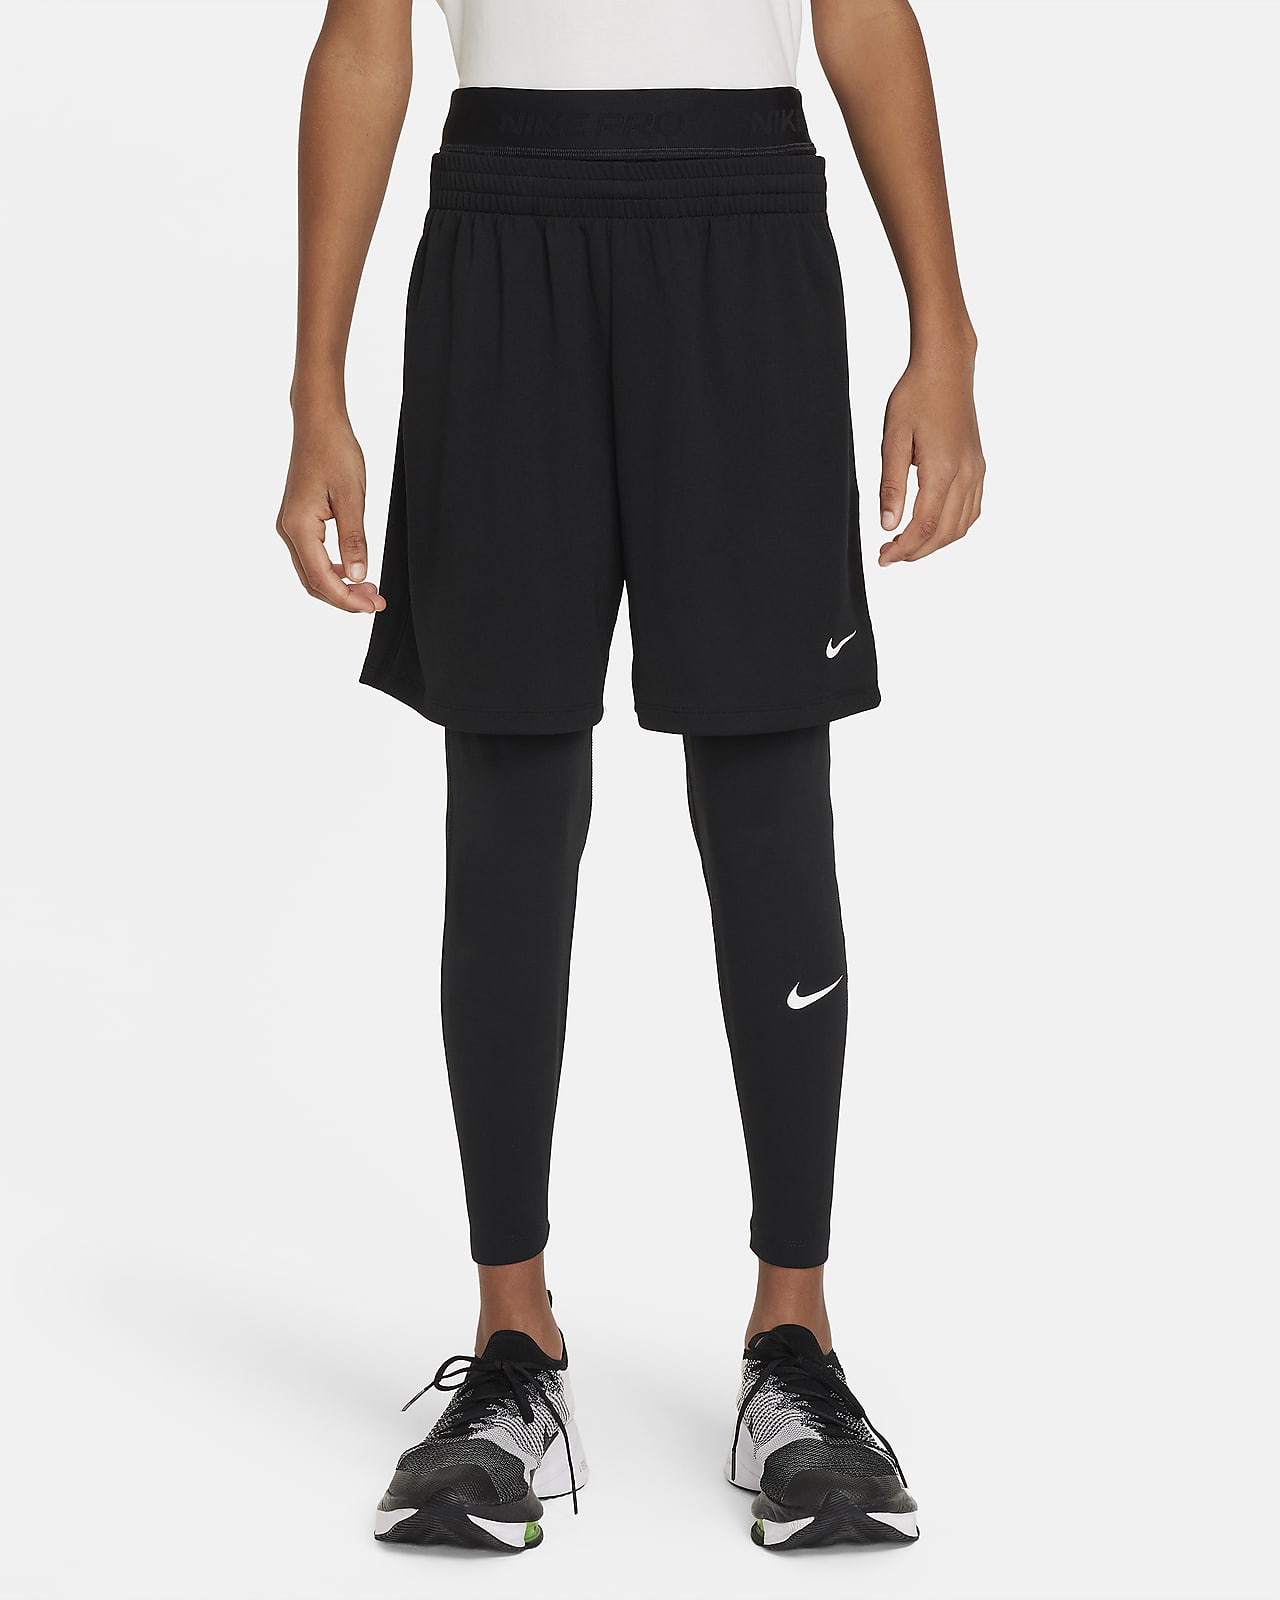 Nike Pro Dri-FIT Malles - Nen